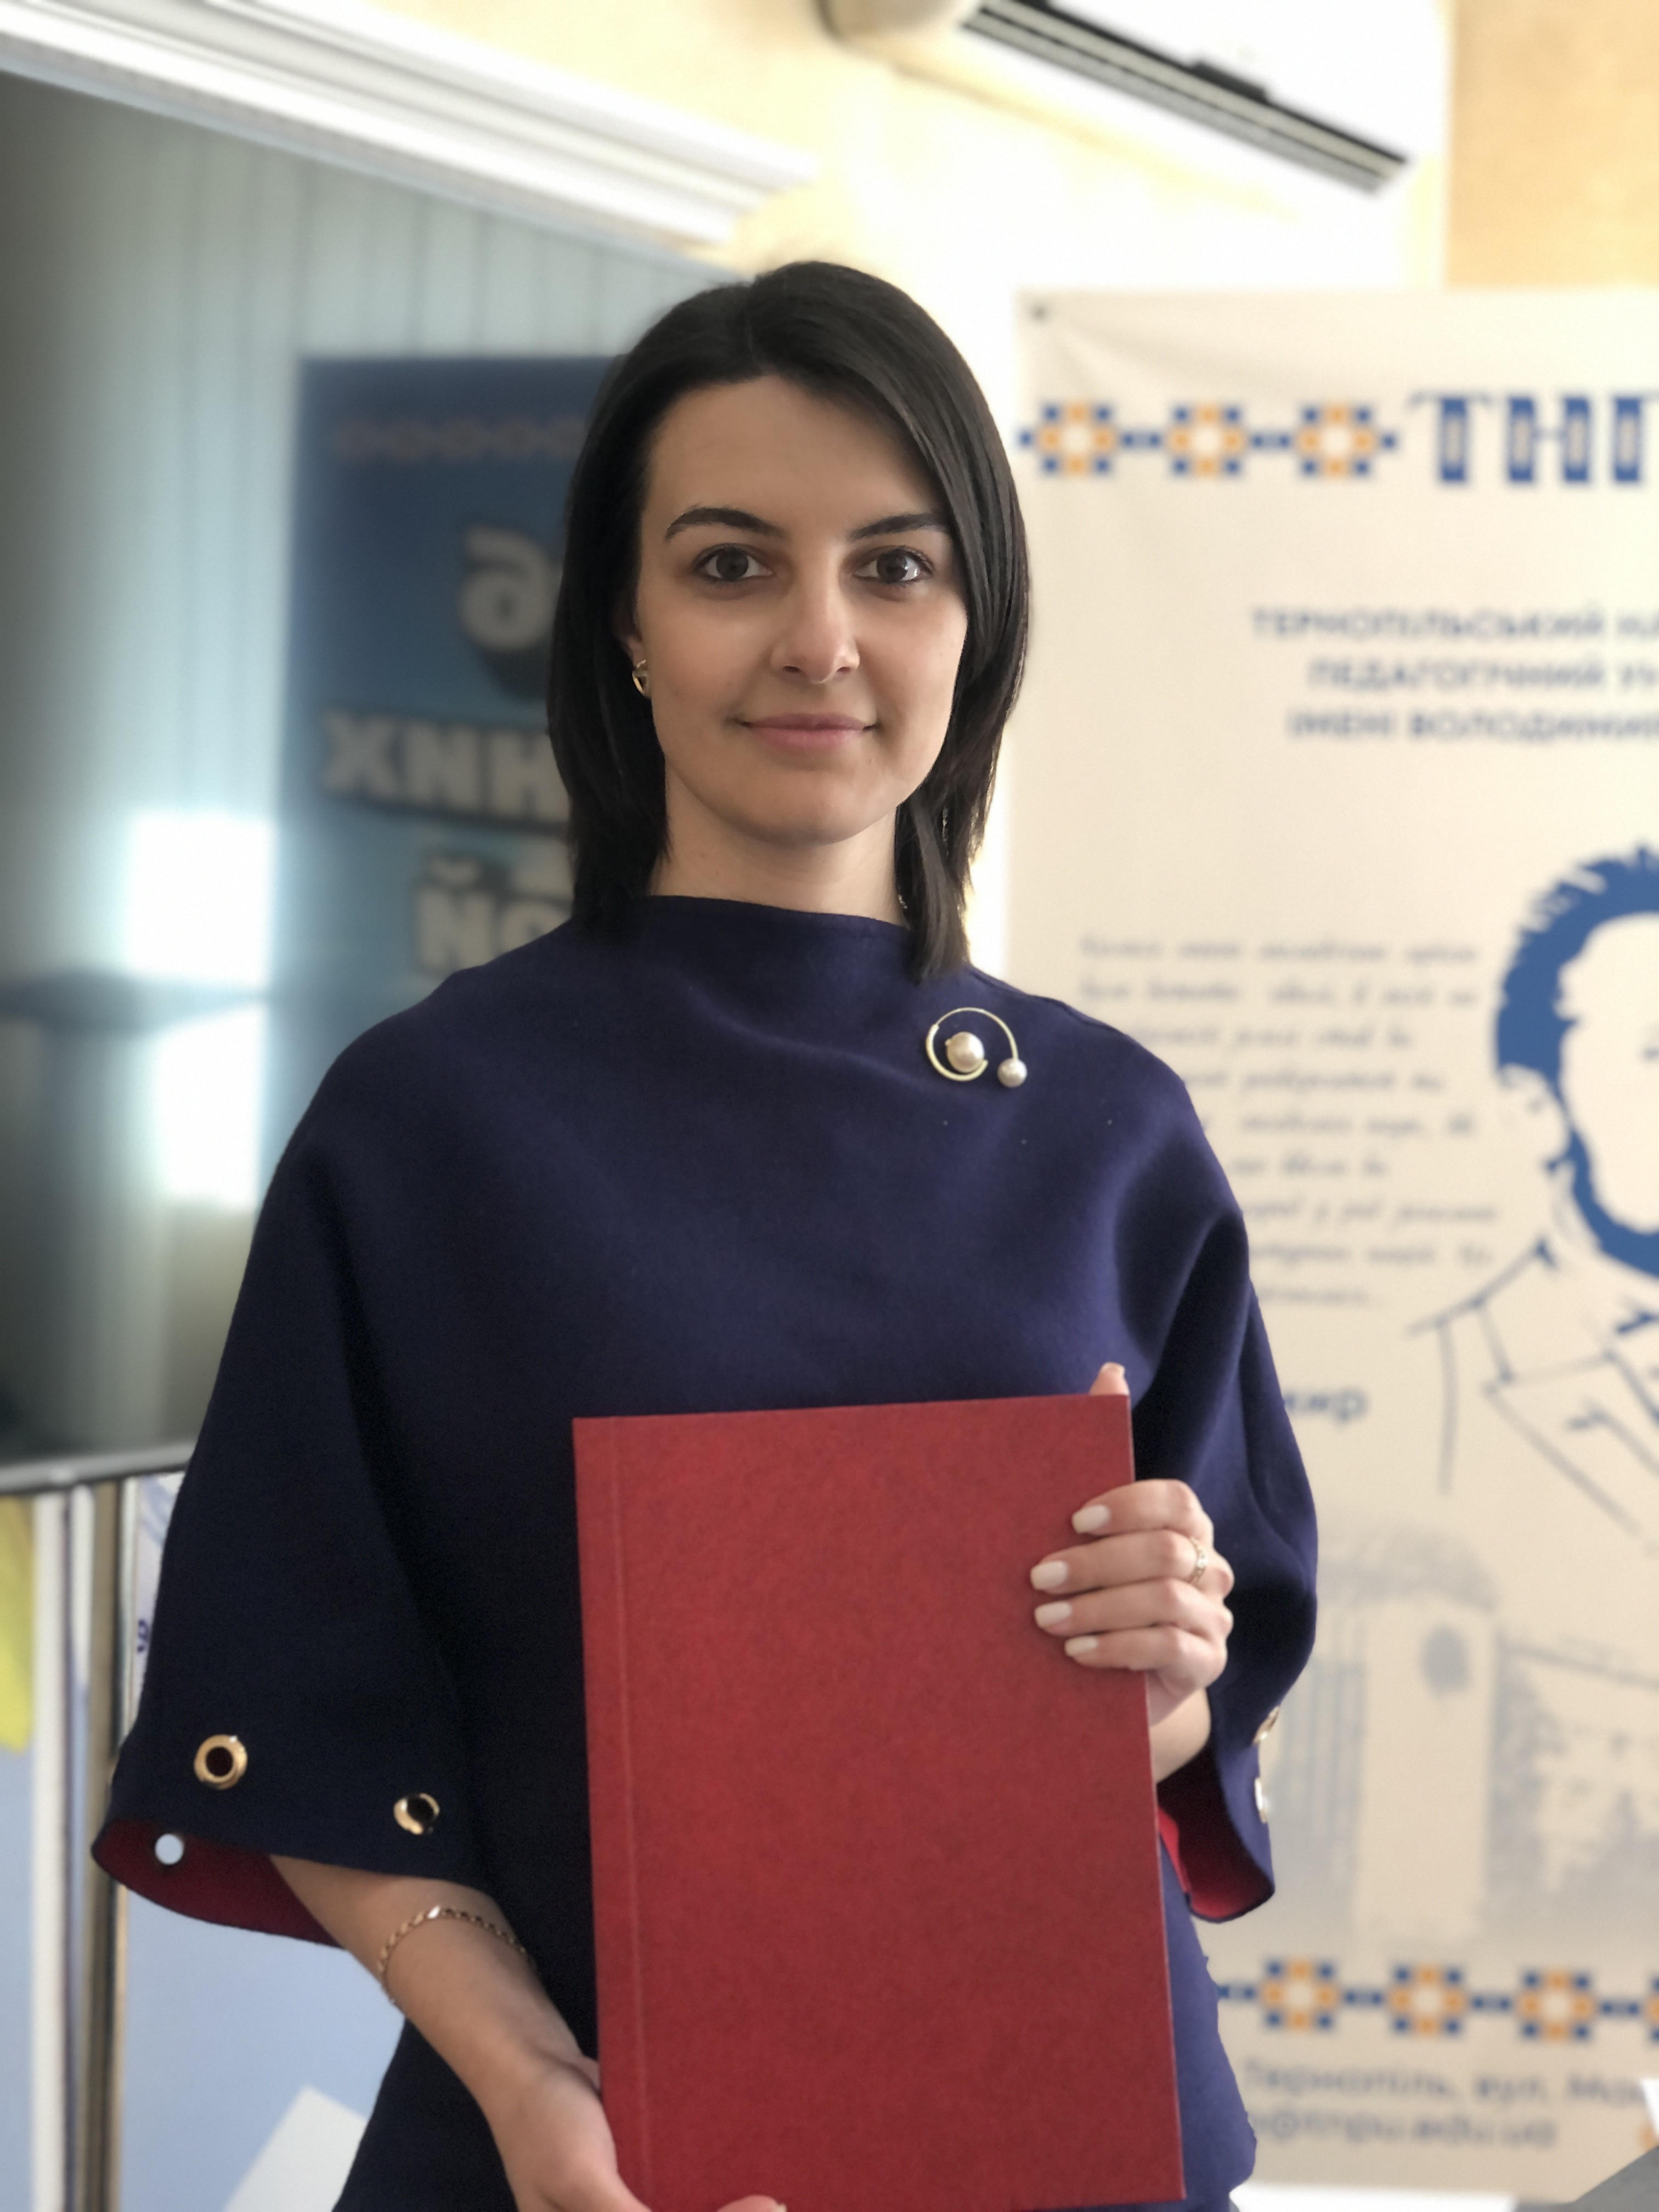 Вітаємо Никіфорчук Жанну Василівну з успішним захистом дисертації!